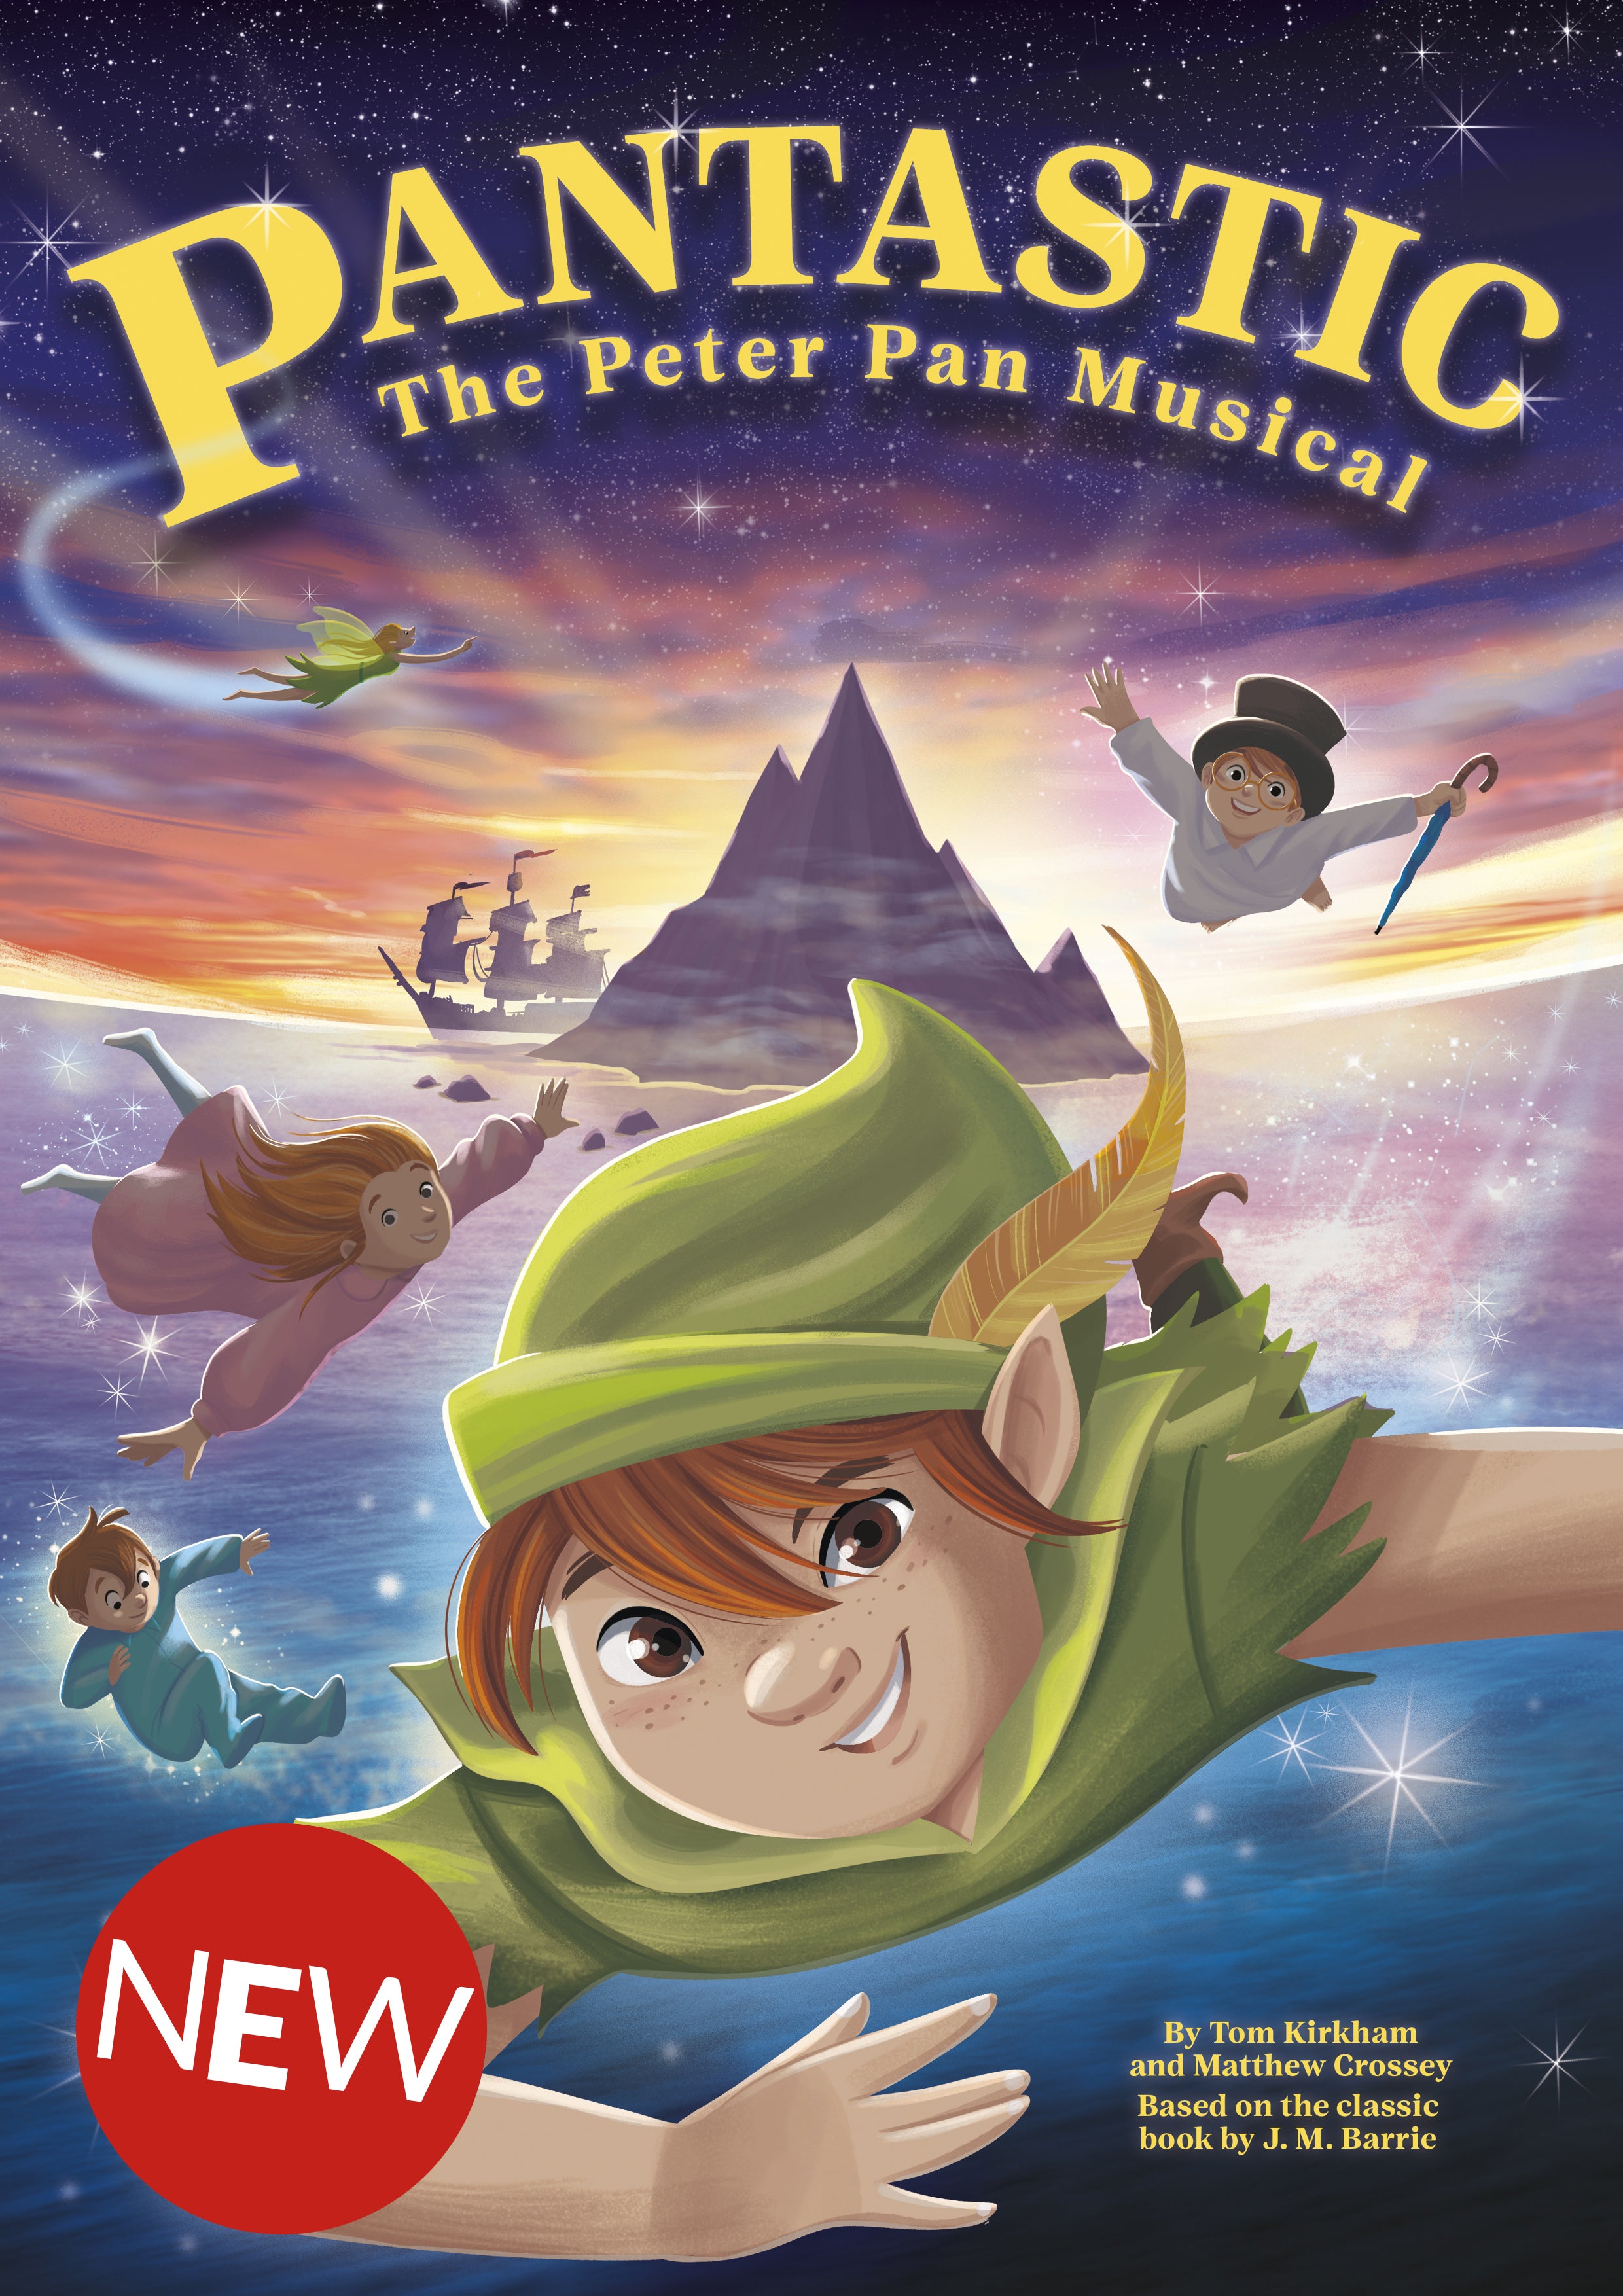 The Peter Pan Musical – Pantastic